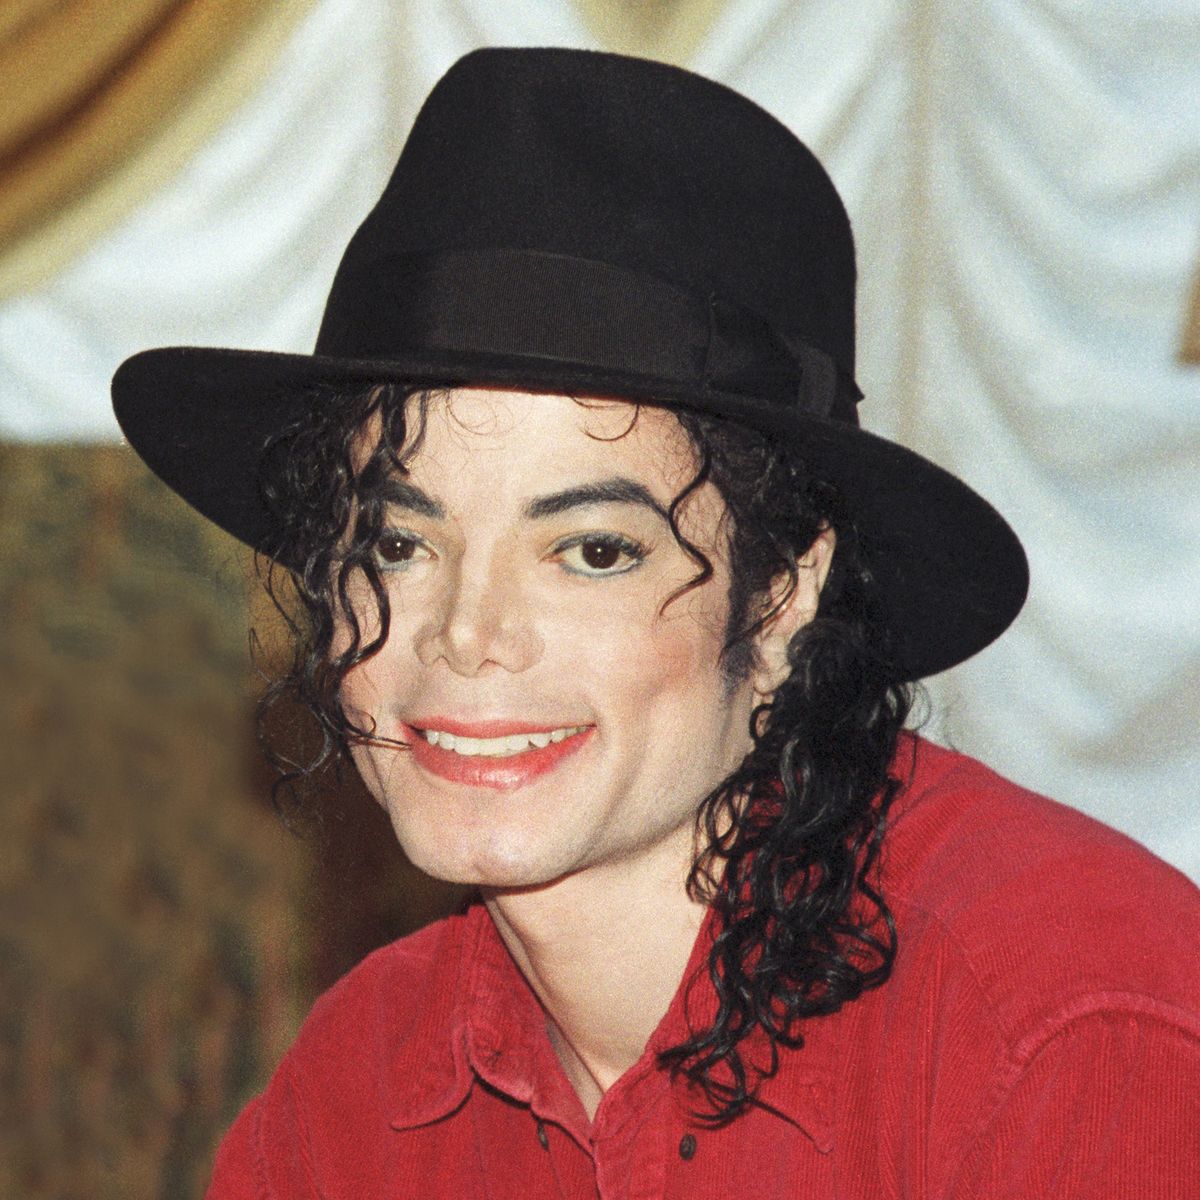 Corte acepta demanda por abuso contra Michael Jackson